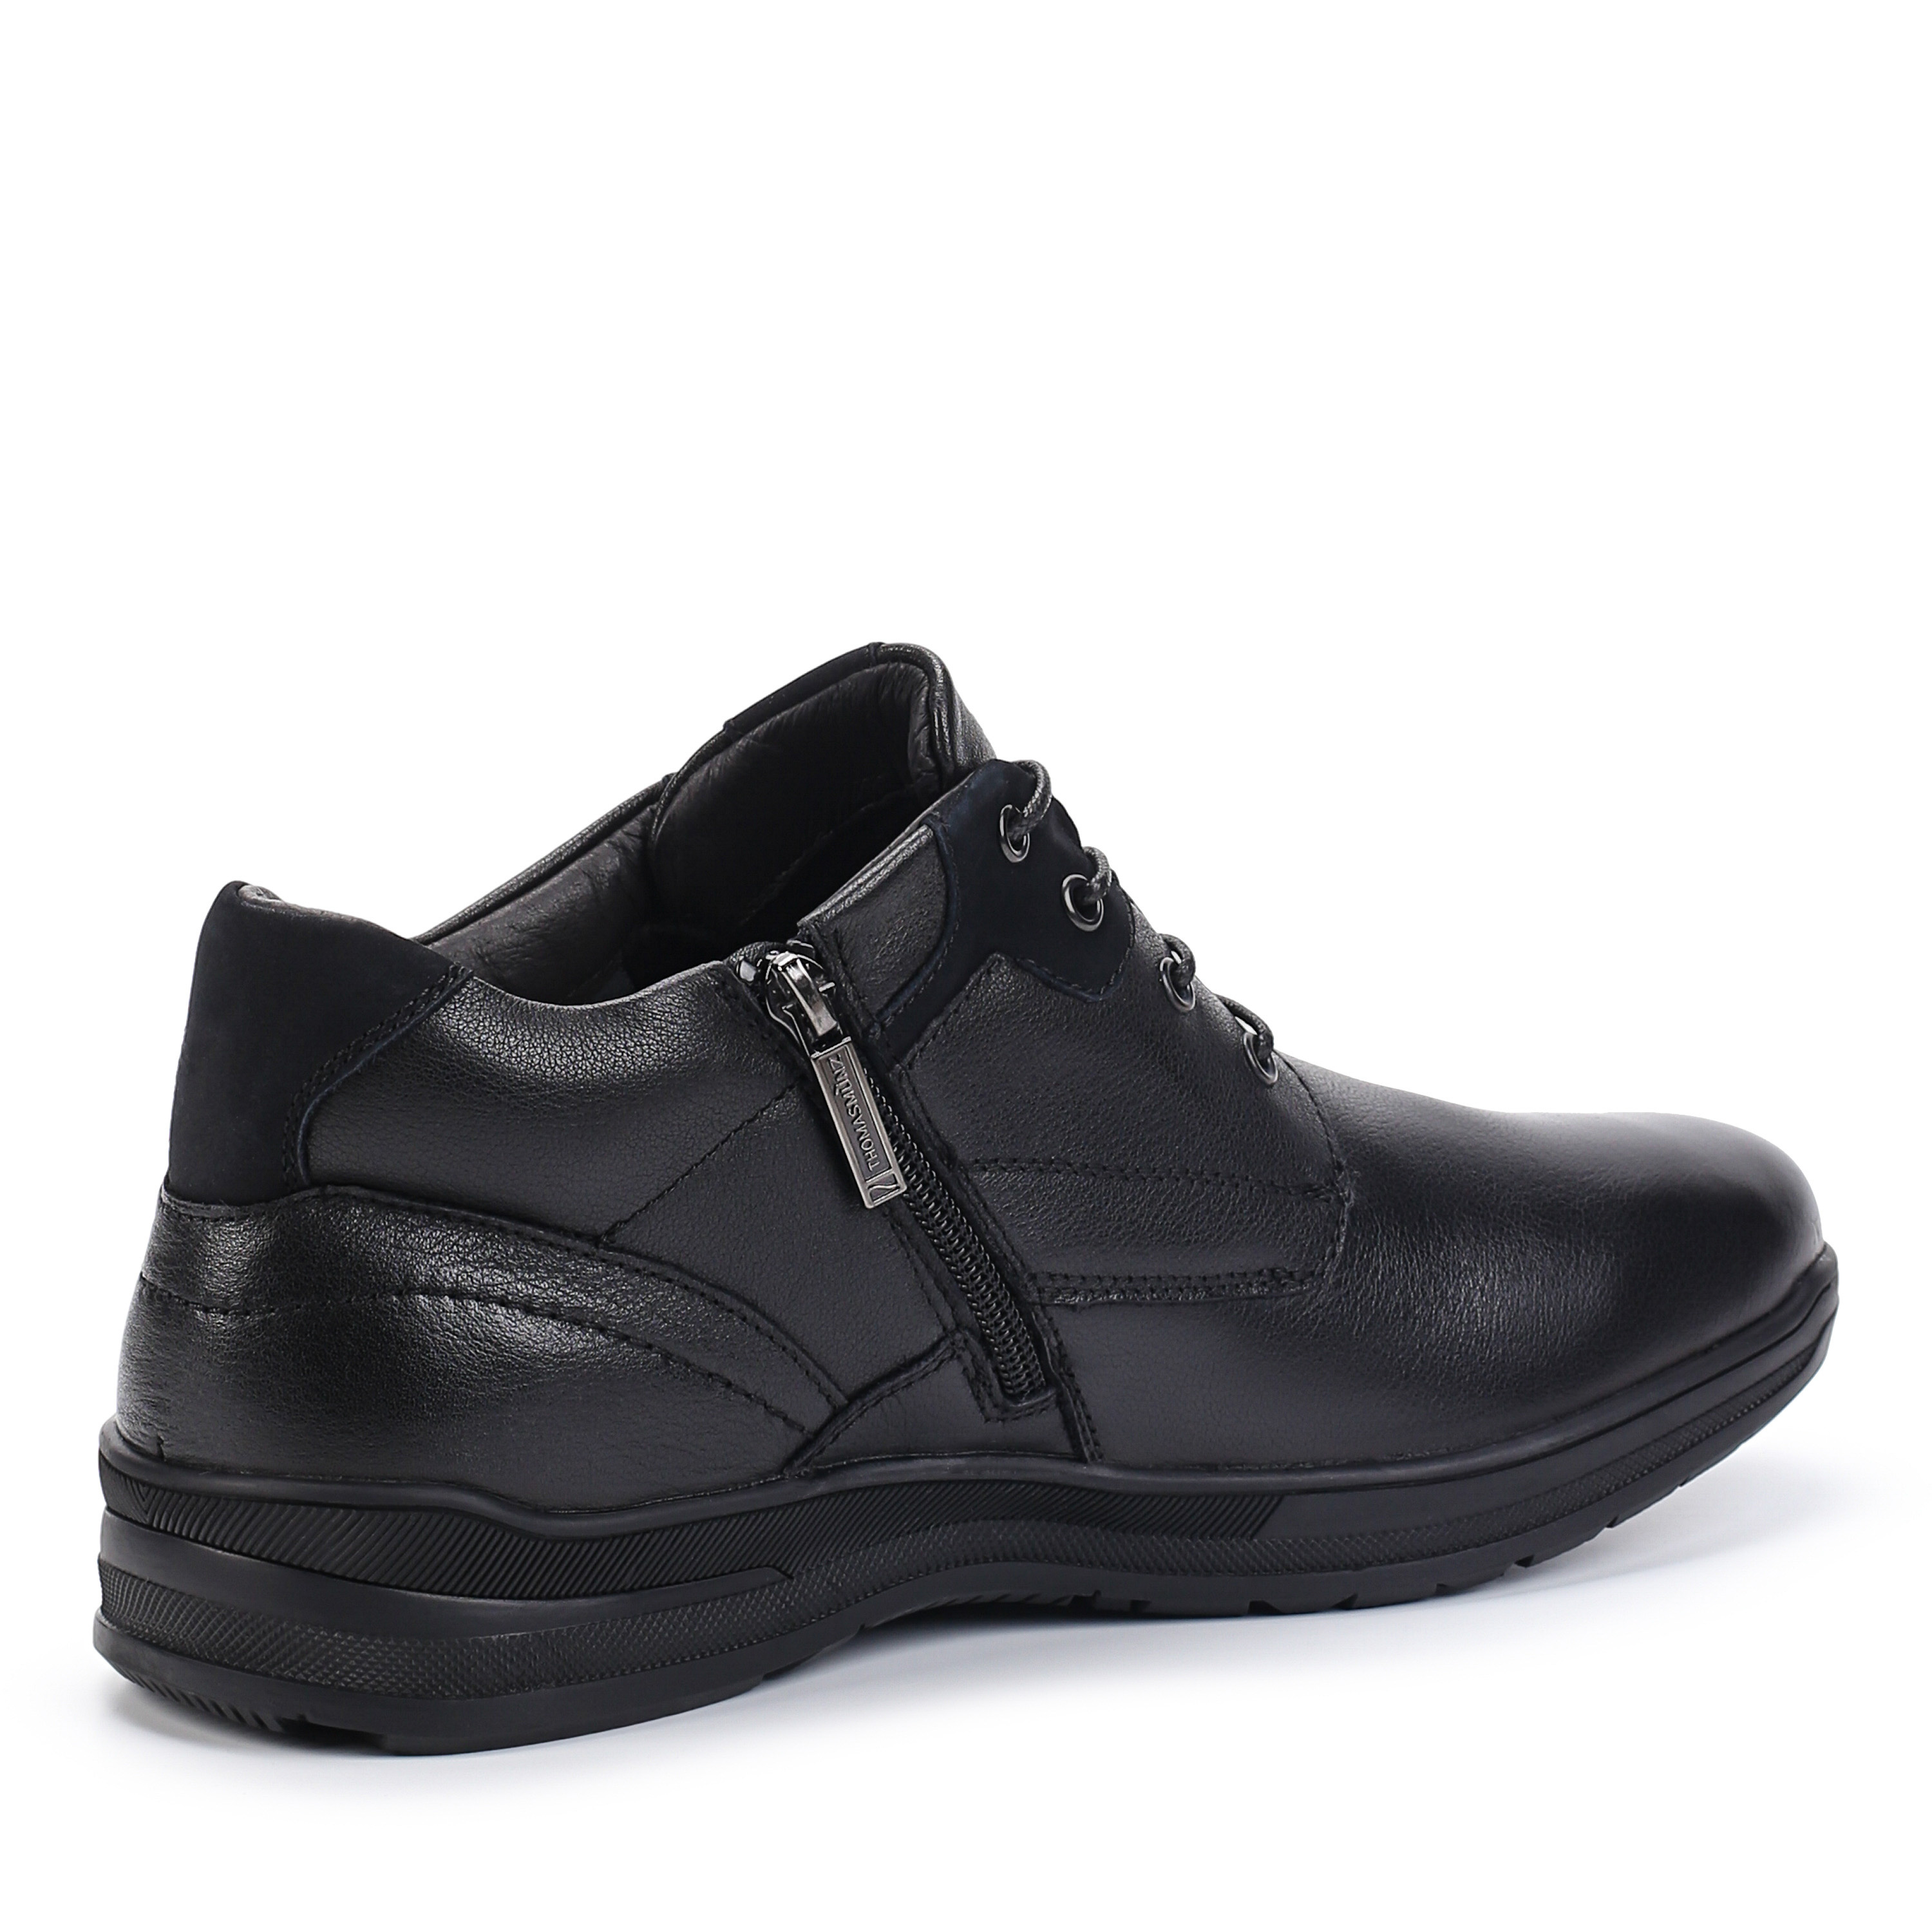 Ботинки Thomas Munz 104-158C-2102 104-158C-2102, цвет черный, размер 40 дерби - фото 3